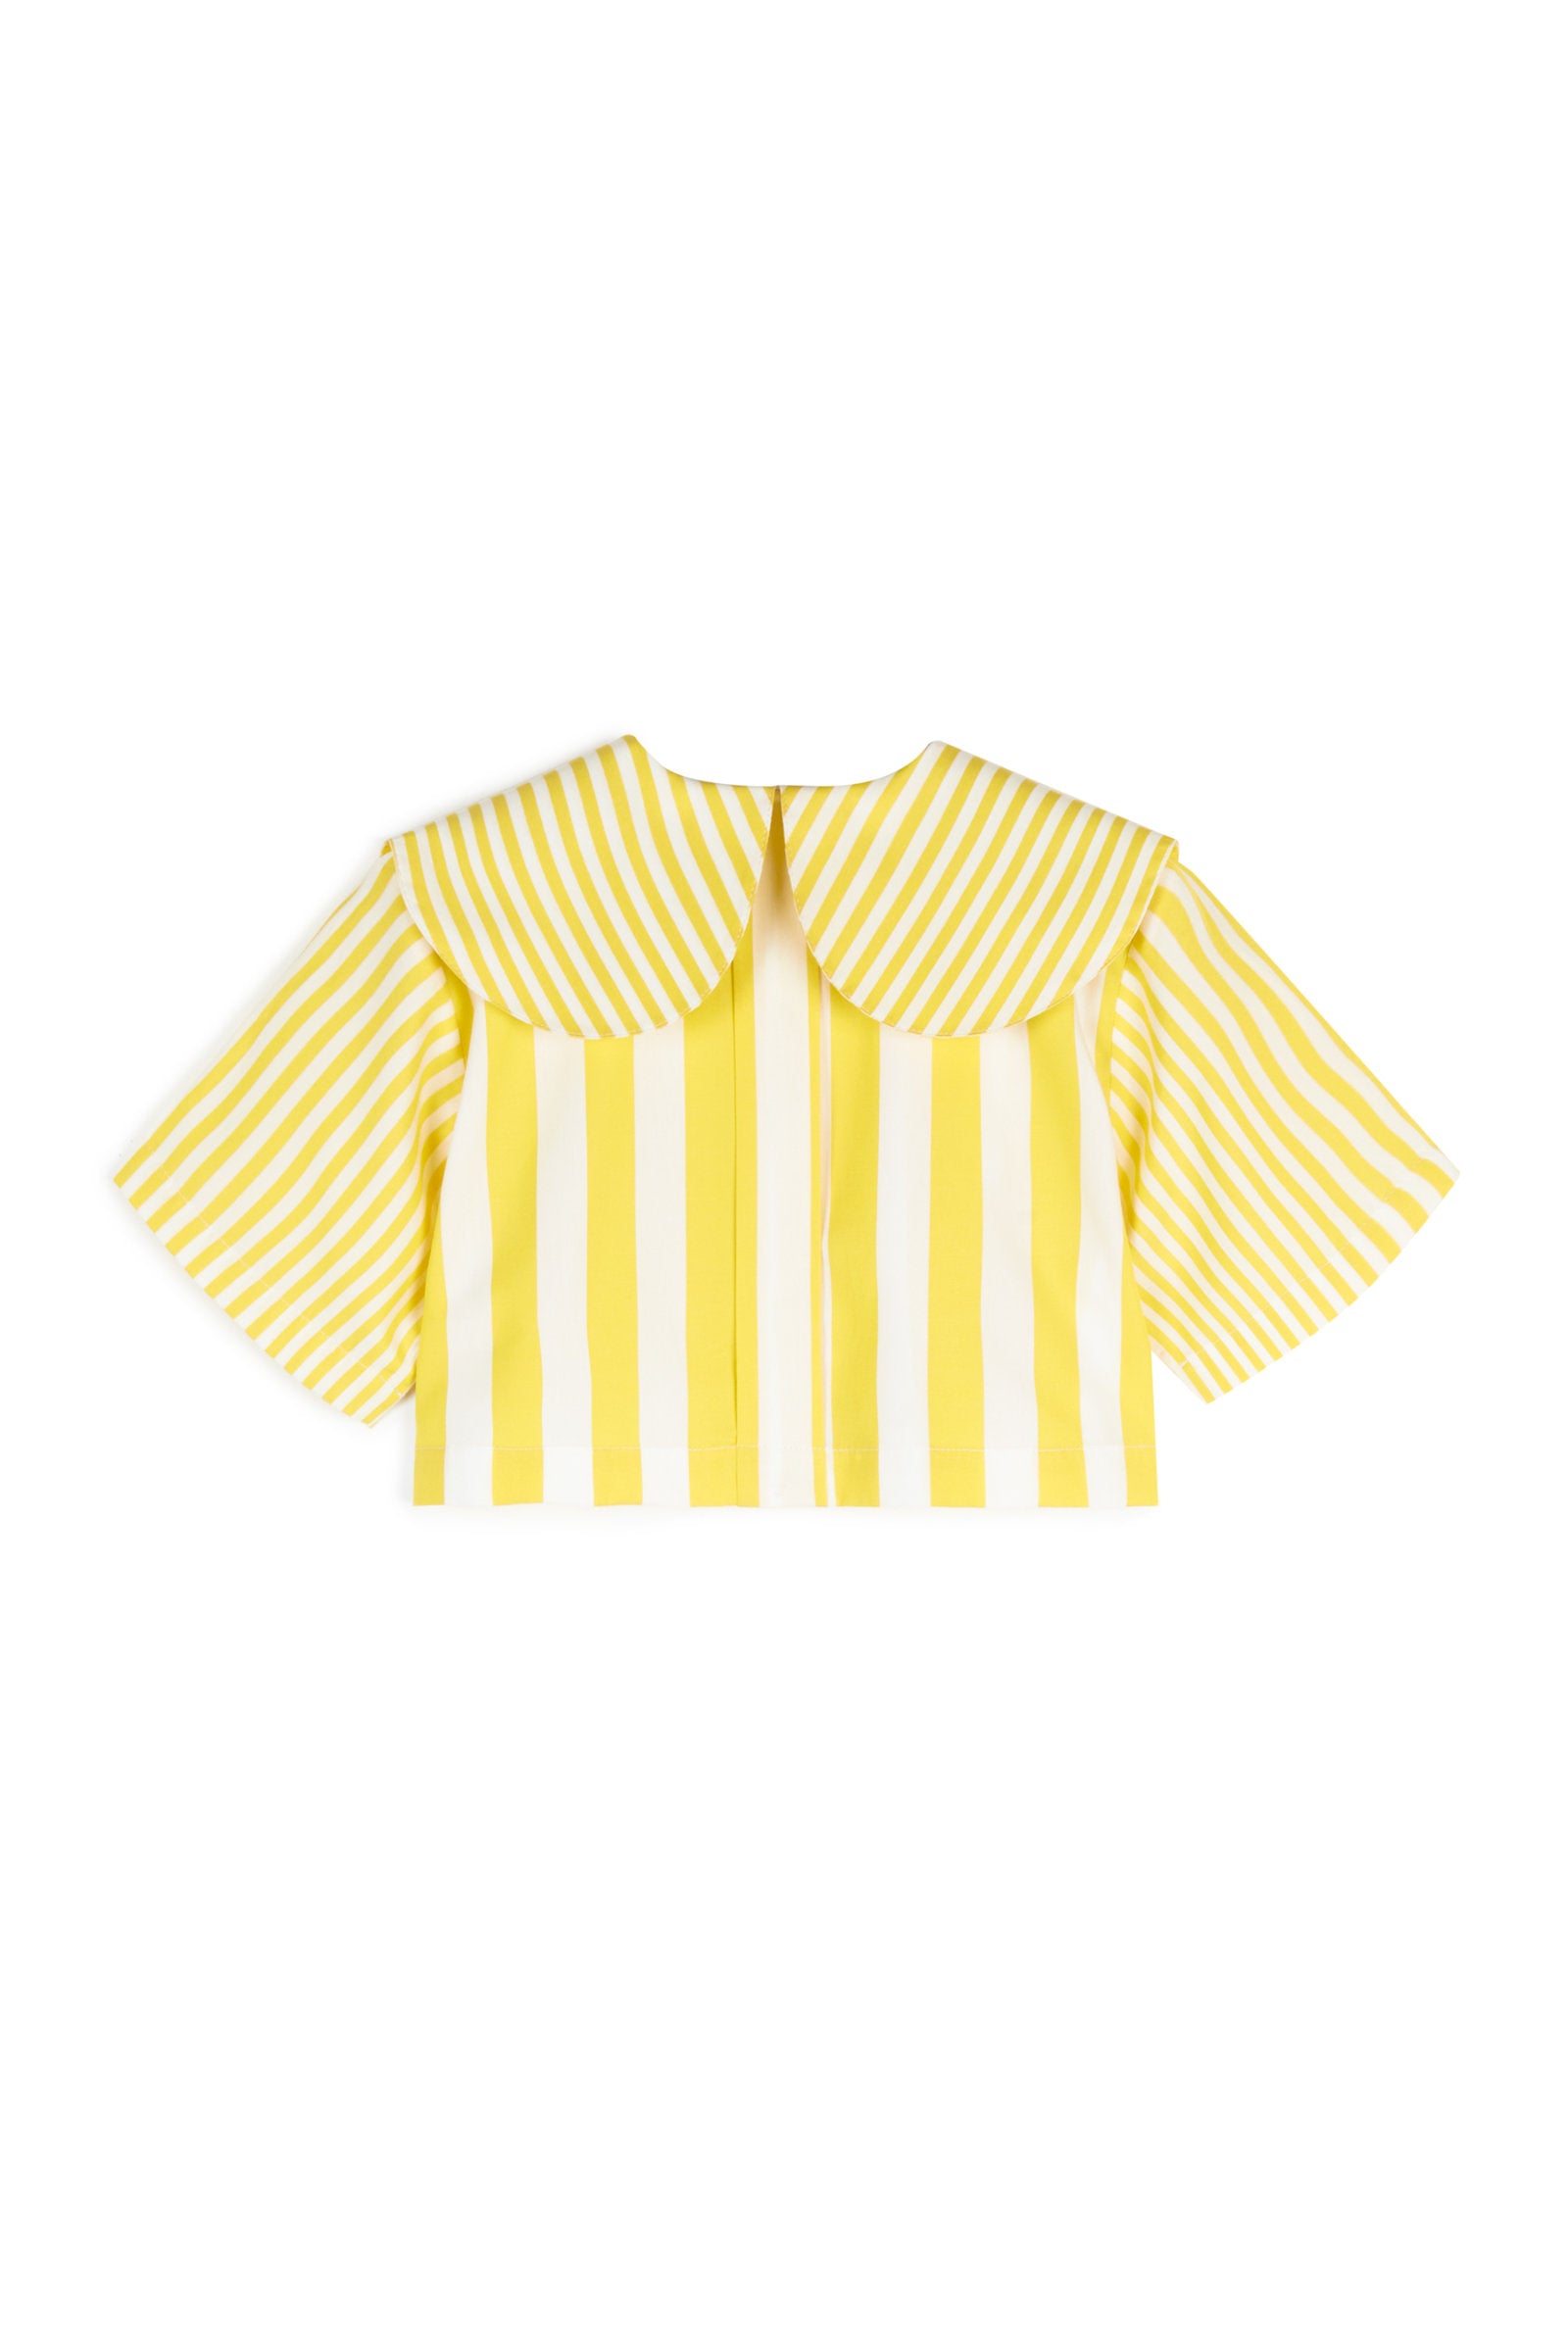 Leonilde Yellow Stripes